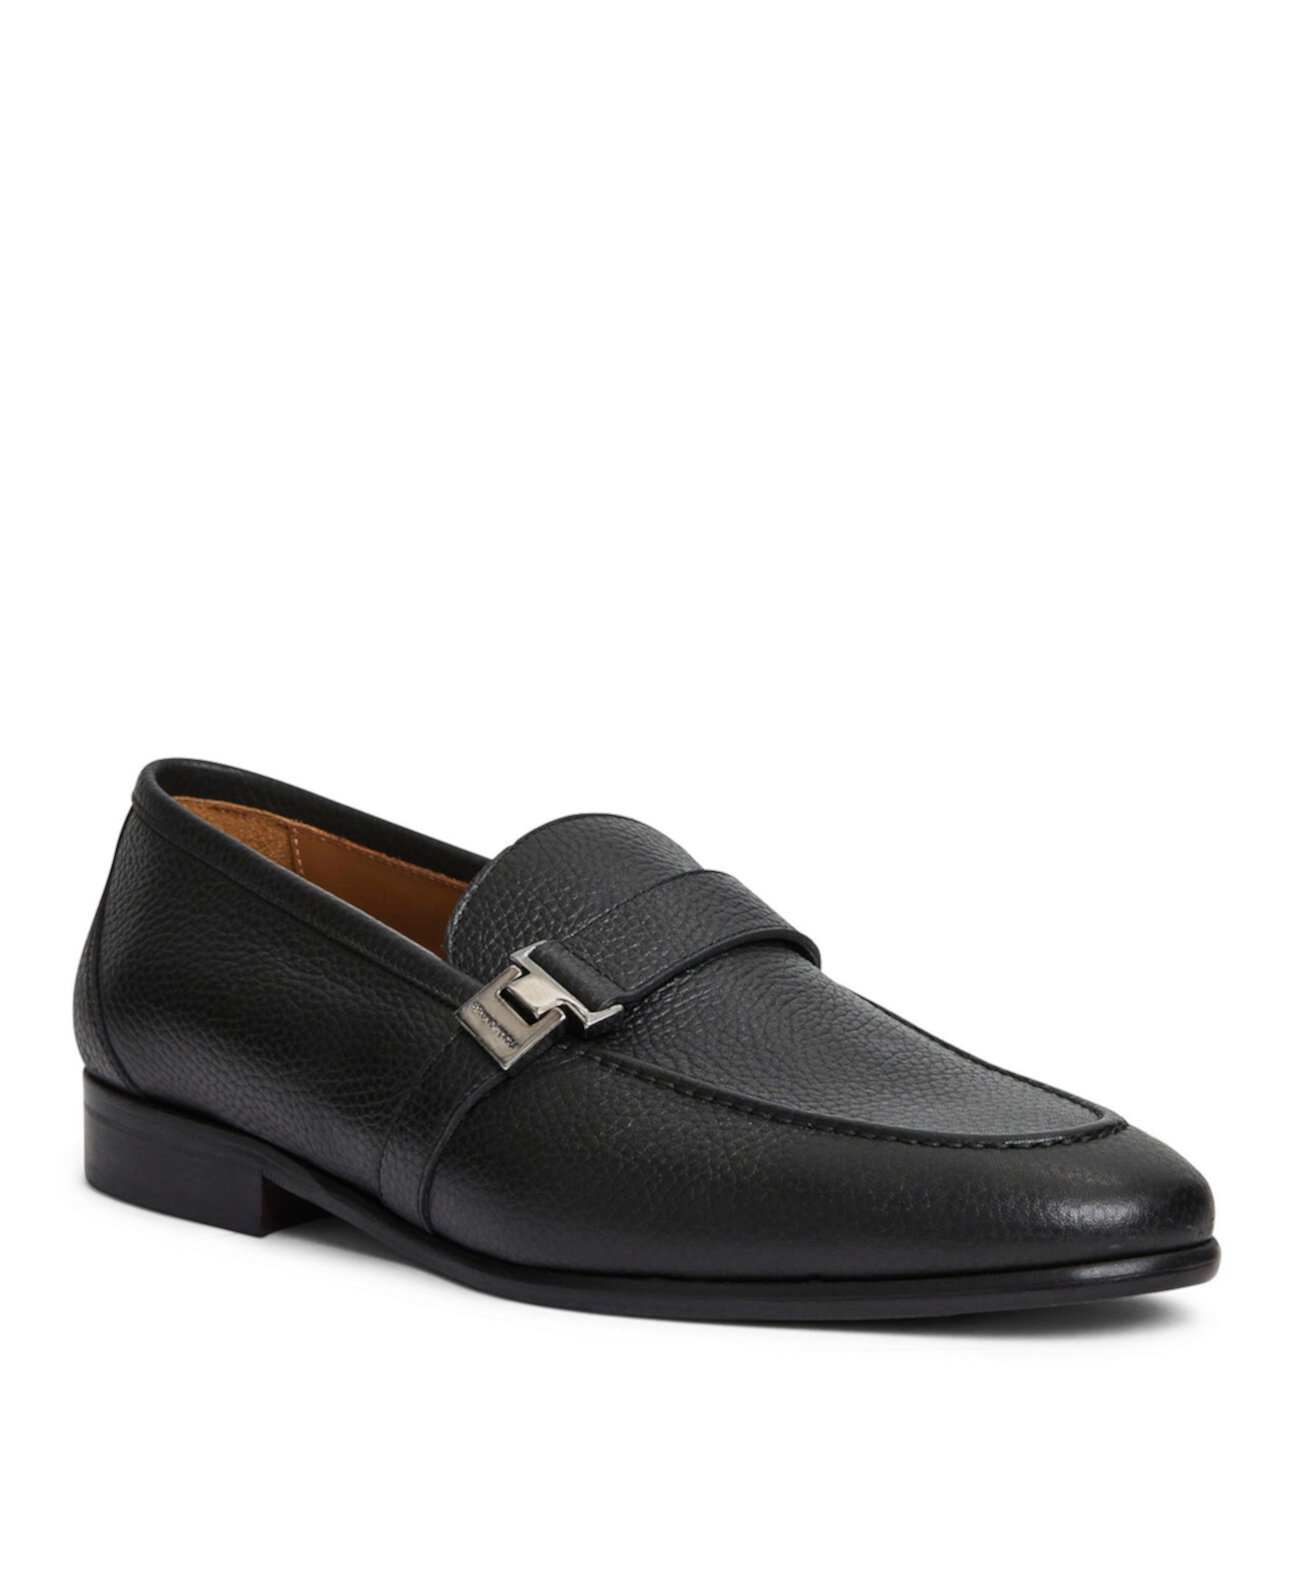 Men's Arlo Leather Shoes Bruno Magli